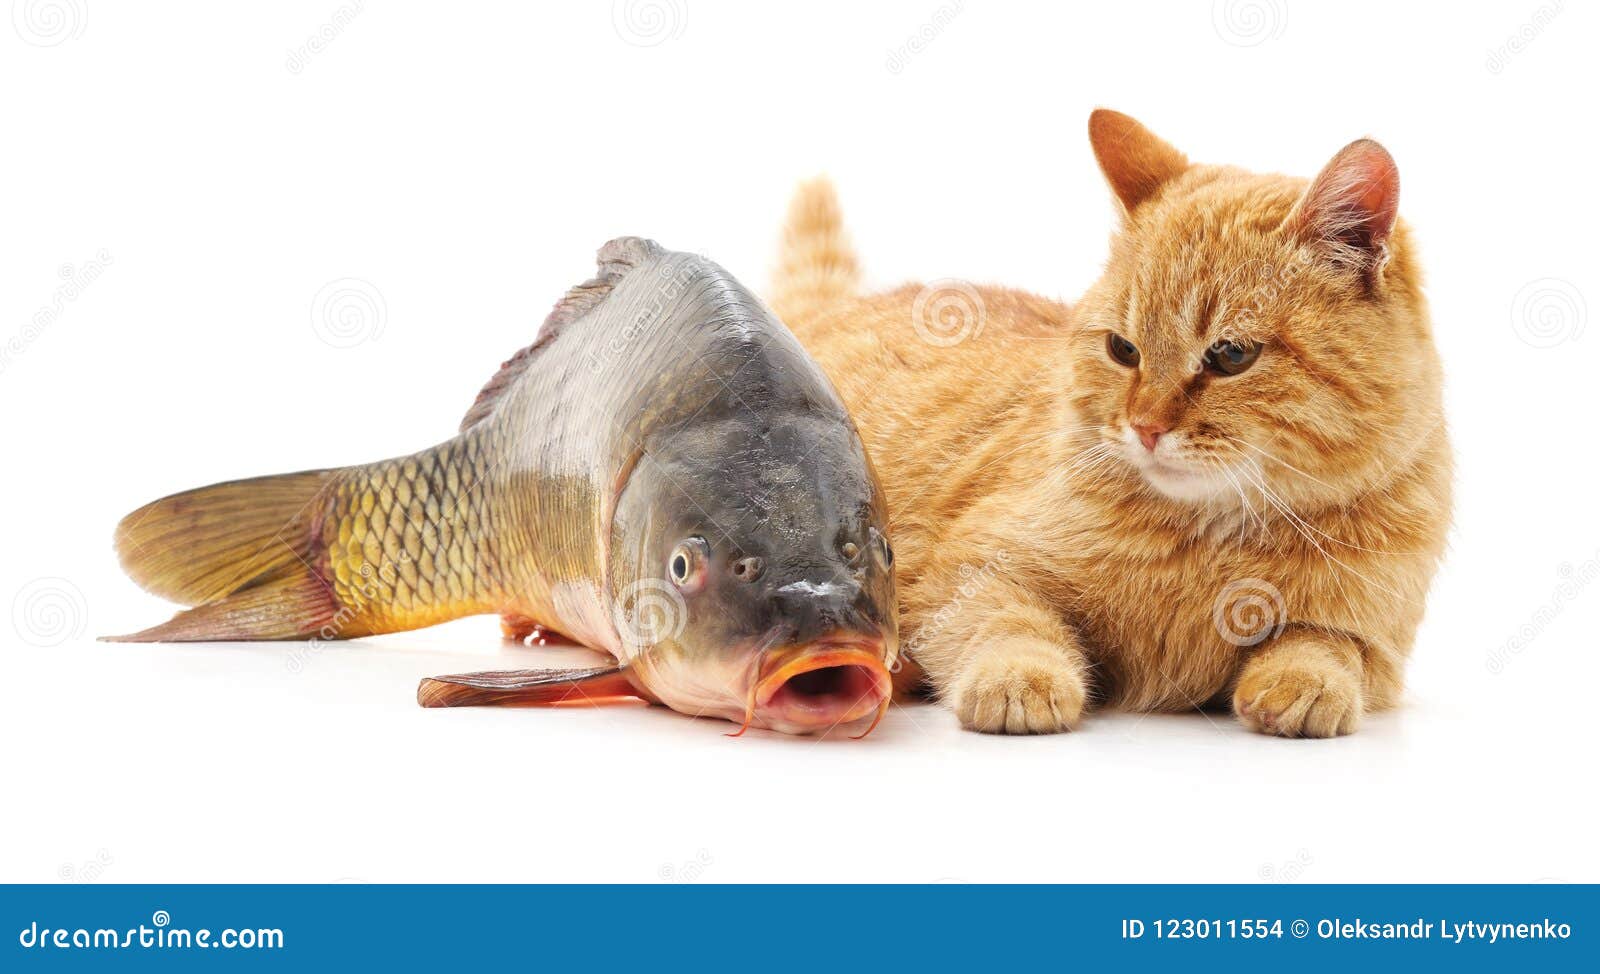 橙色猫和一条大鱼 库存图片. 图片 包括有 毛皮, 似猫, 小猫, 逗人喜爱, 红色, 橙色, 眼睛, 幽默 - 43163455